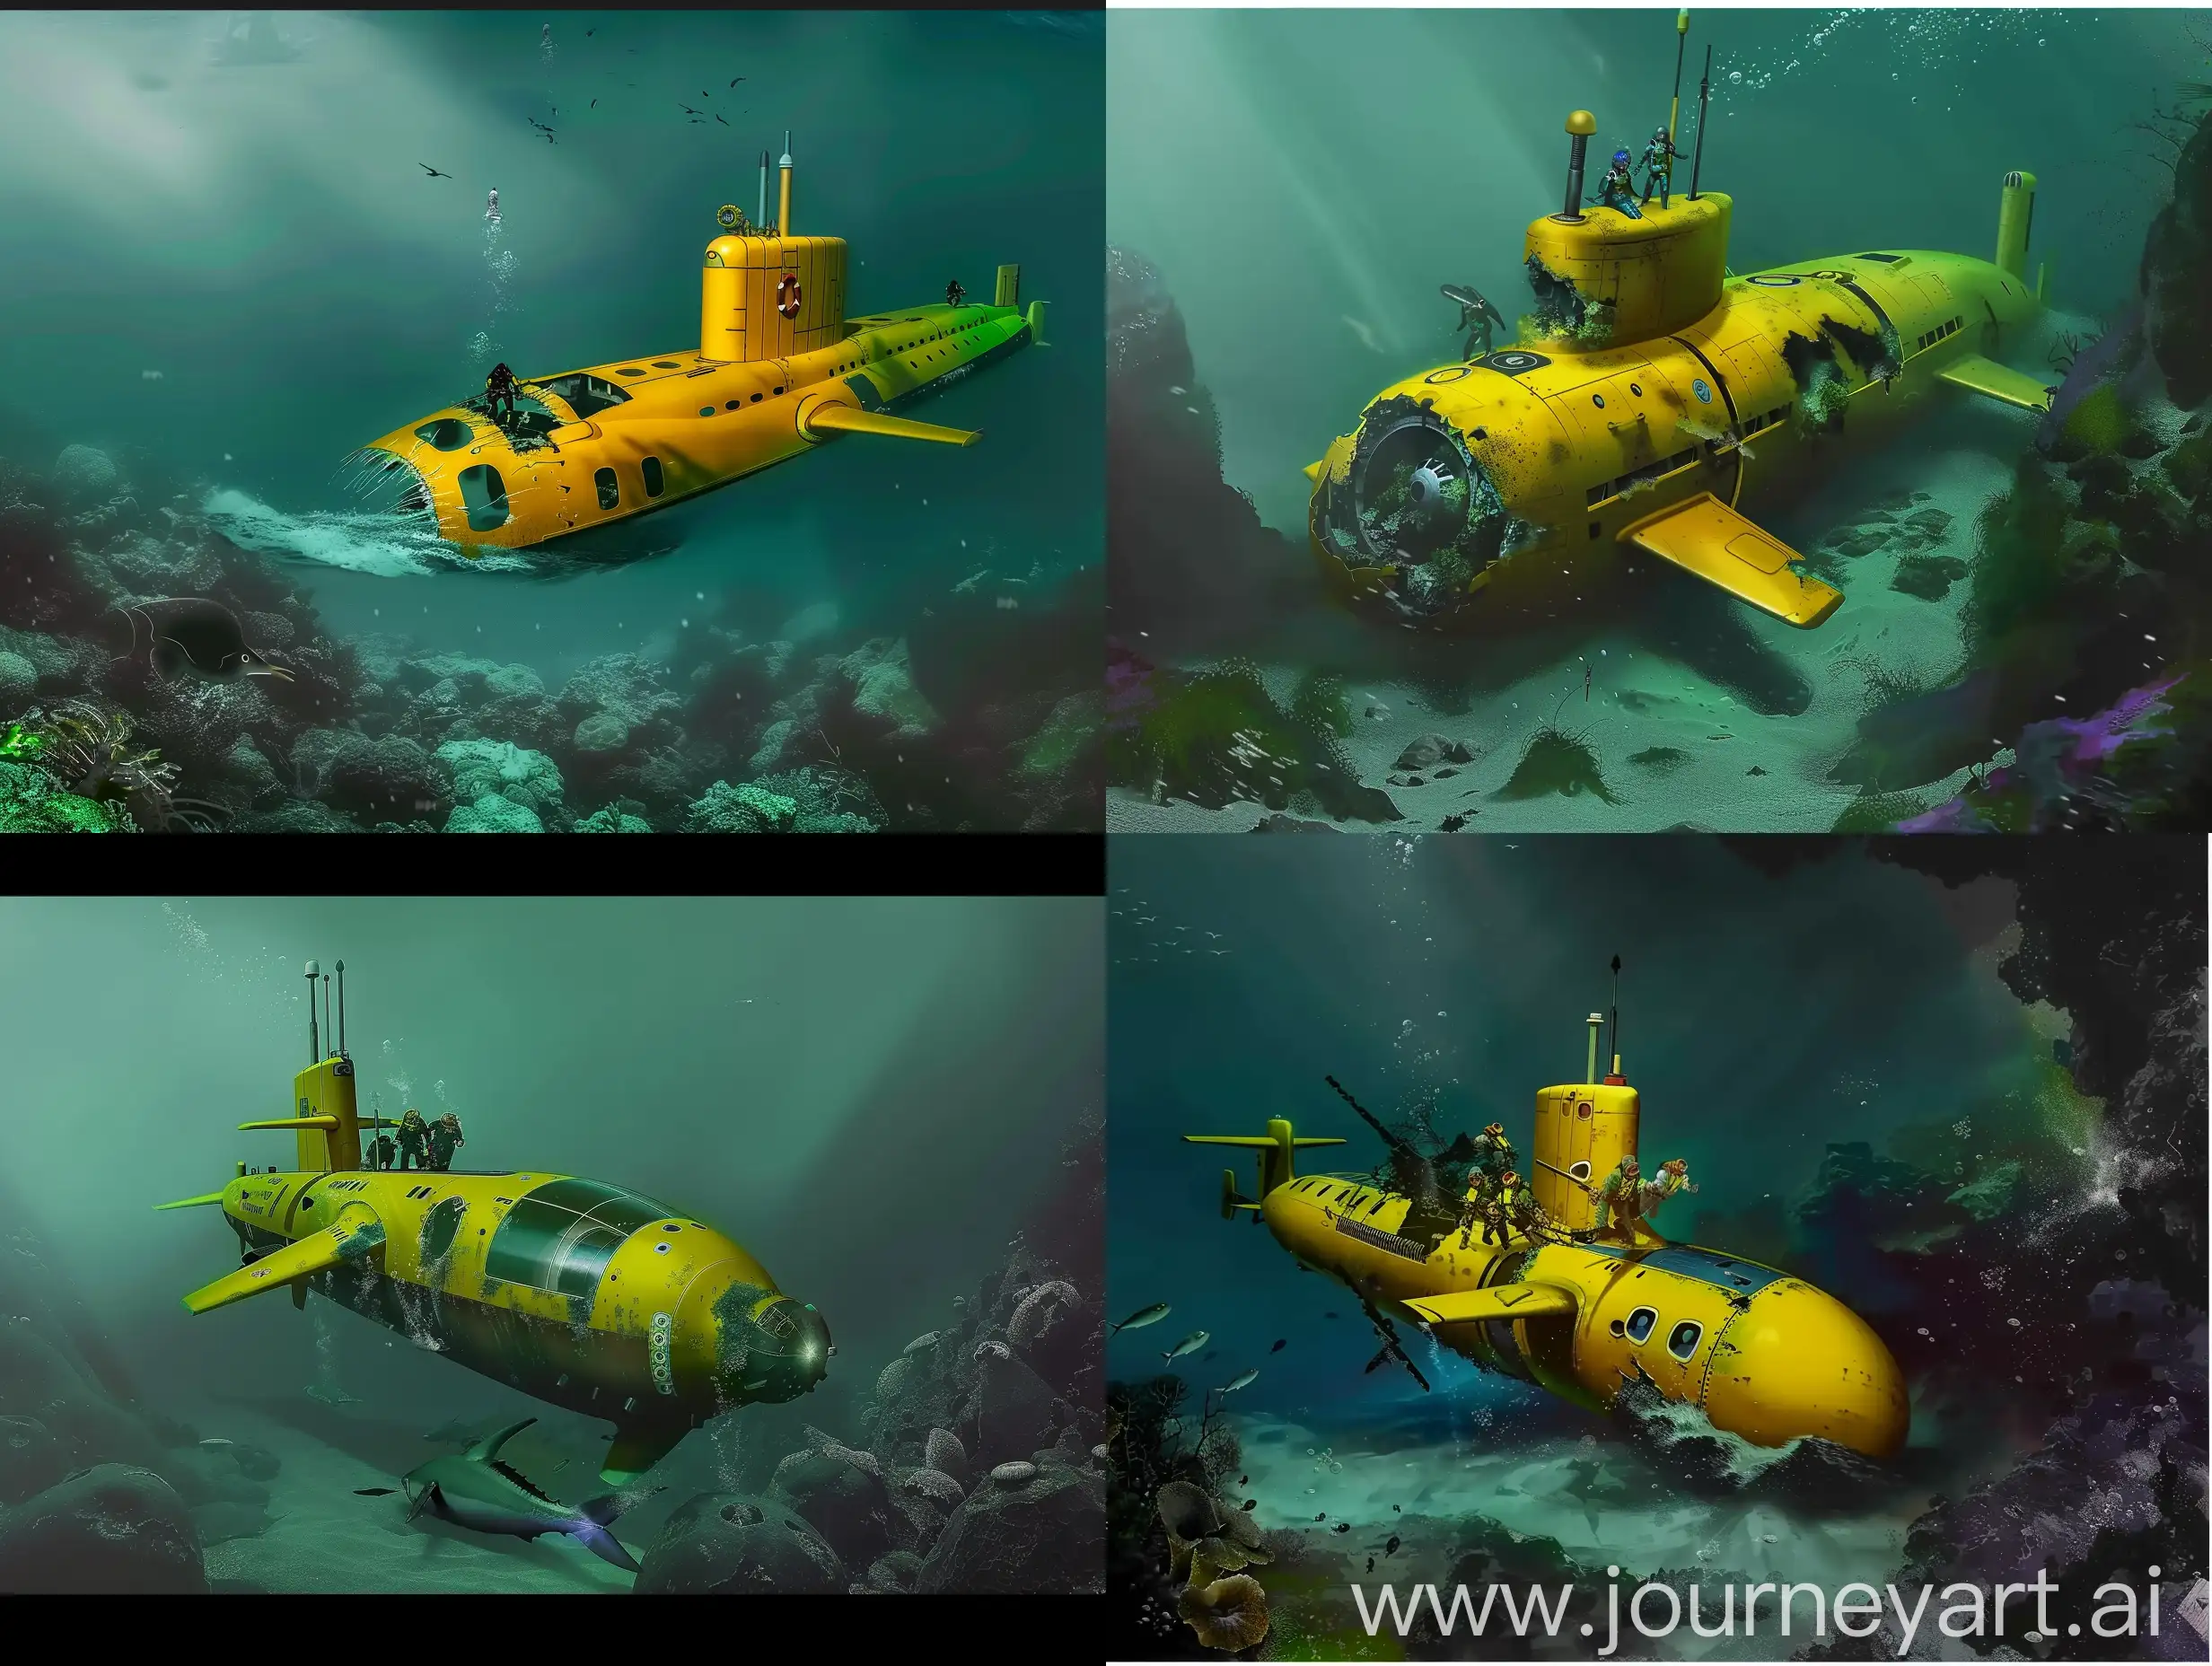 Yellow submarine crashes on the seabed, crew flees, photorealism